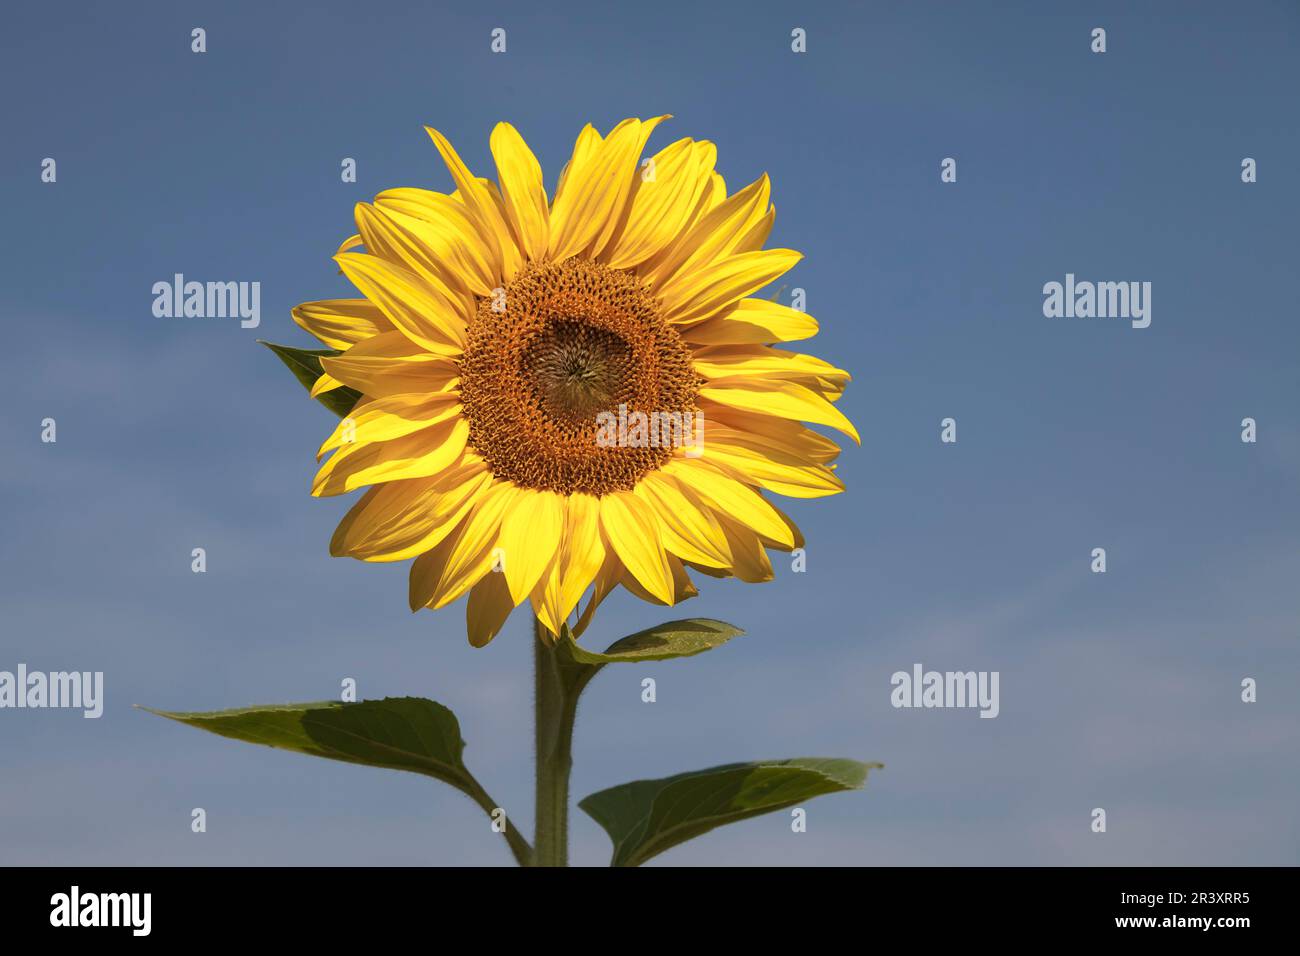 Helianthus annuus, Gewöhnliche Sonnenblume, Sonnenblume - Helianthus annuus, known as the Common sunflower, Sunflower, Mirasol Stock Photo